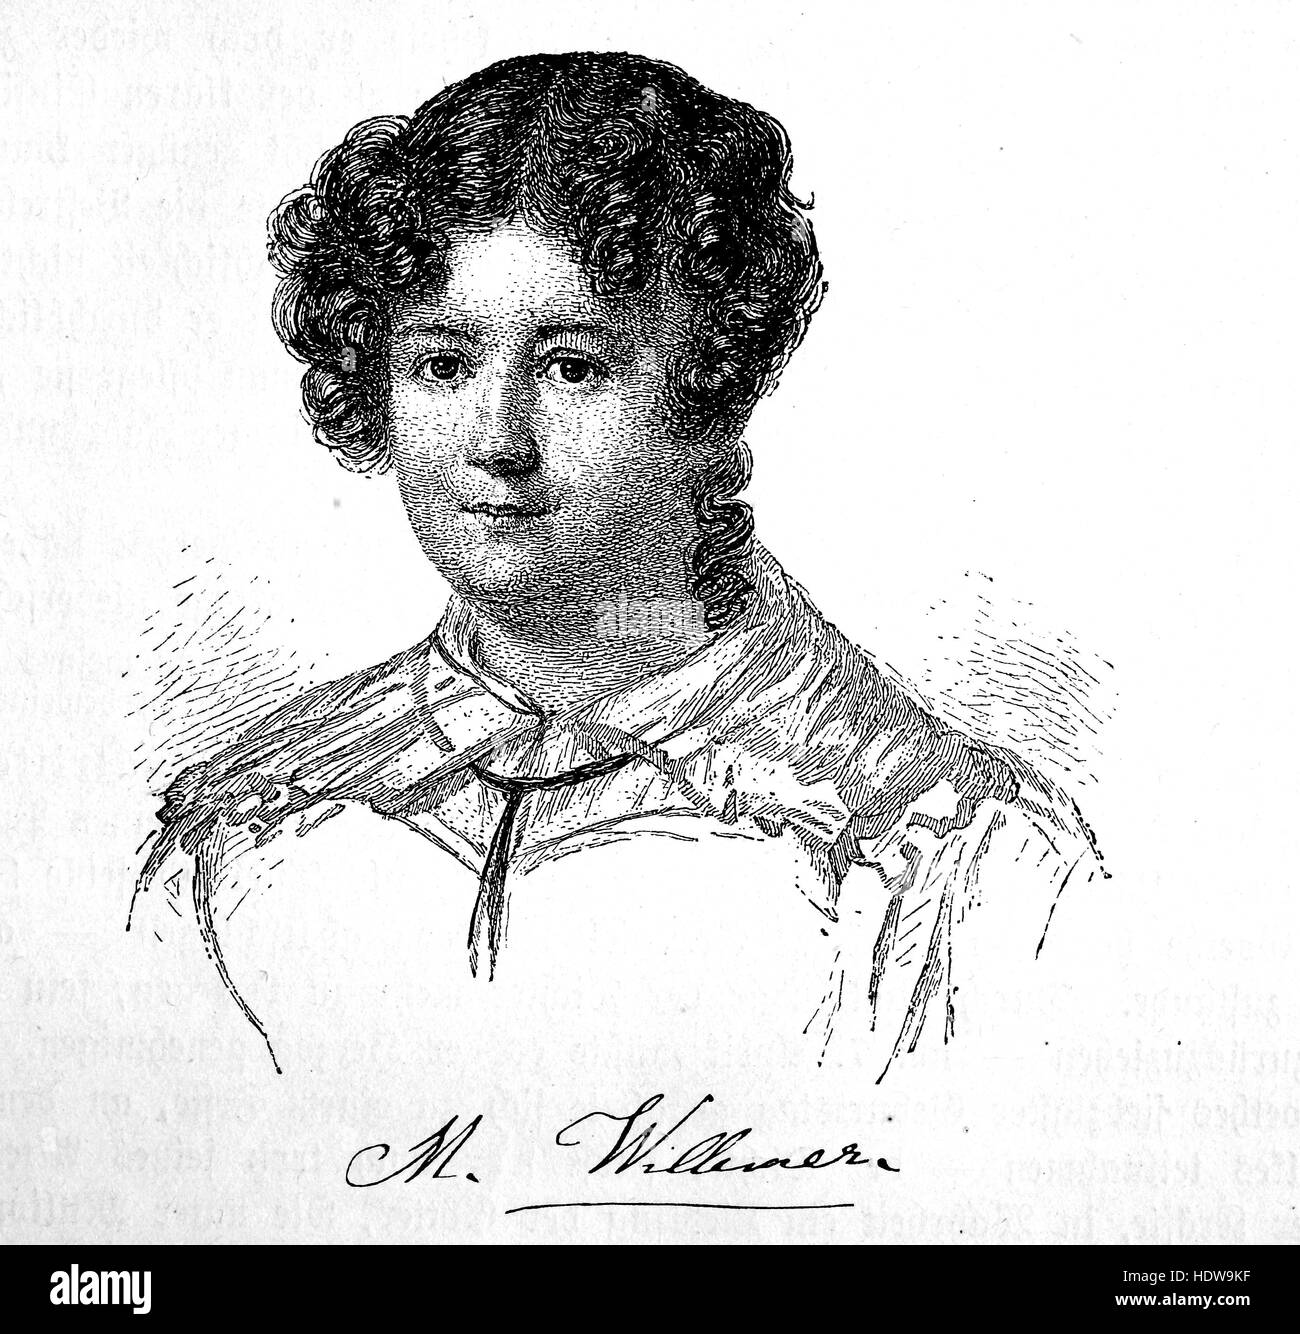 Marianne von Willemer, 1784-1860, probablement né comme Pirngruber Marianne, également connu sous le nom de Marianne Jung, une actrice et danseuse autrichienne, gravure sur bois de l'année 1880 Banque D'Images